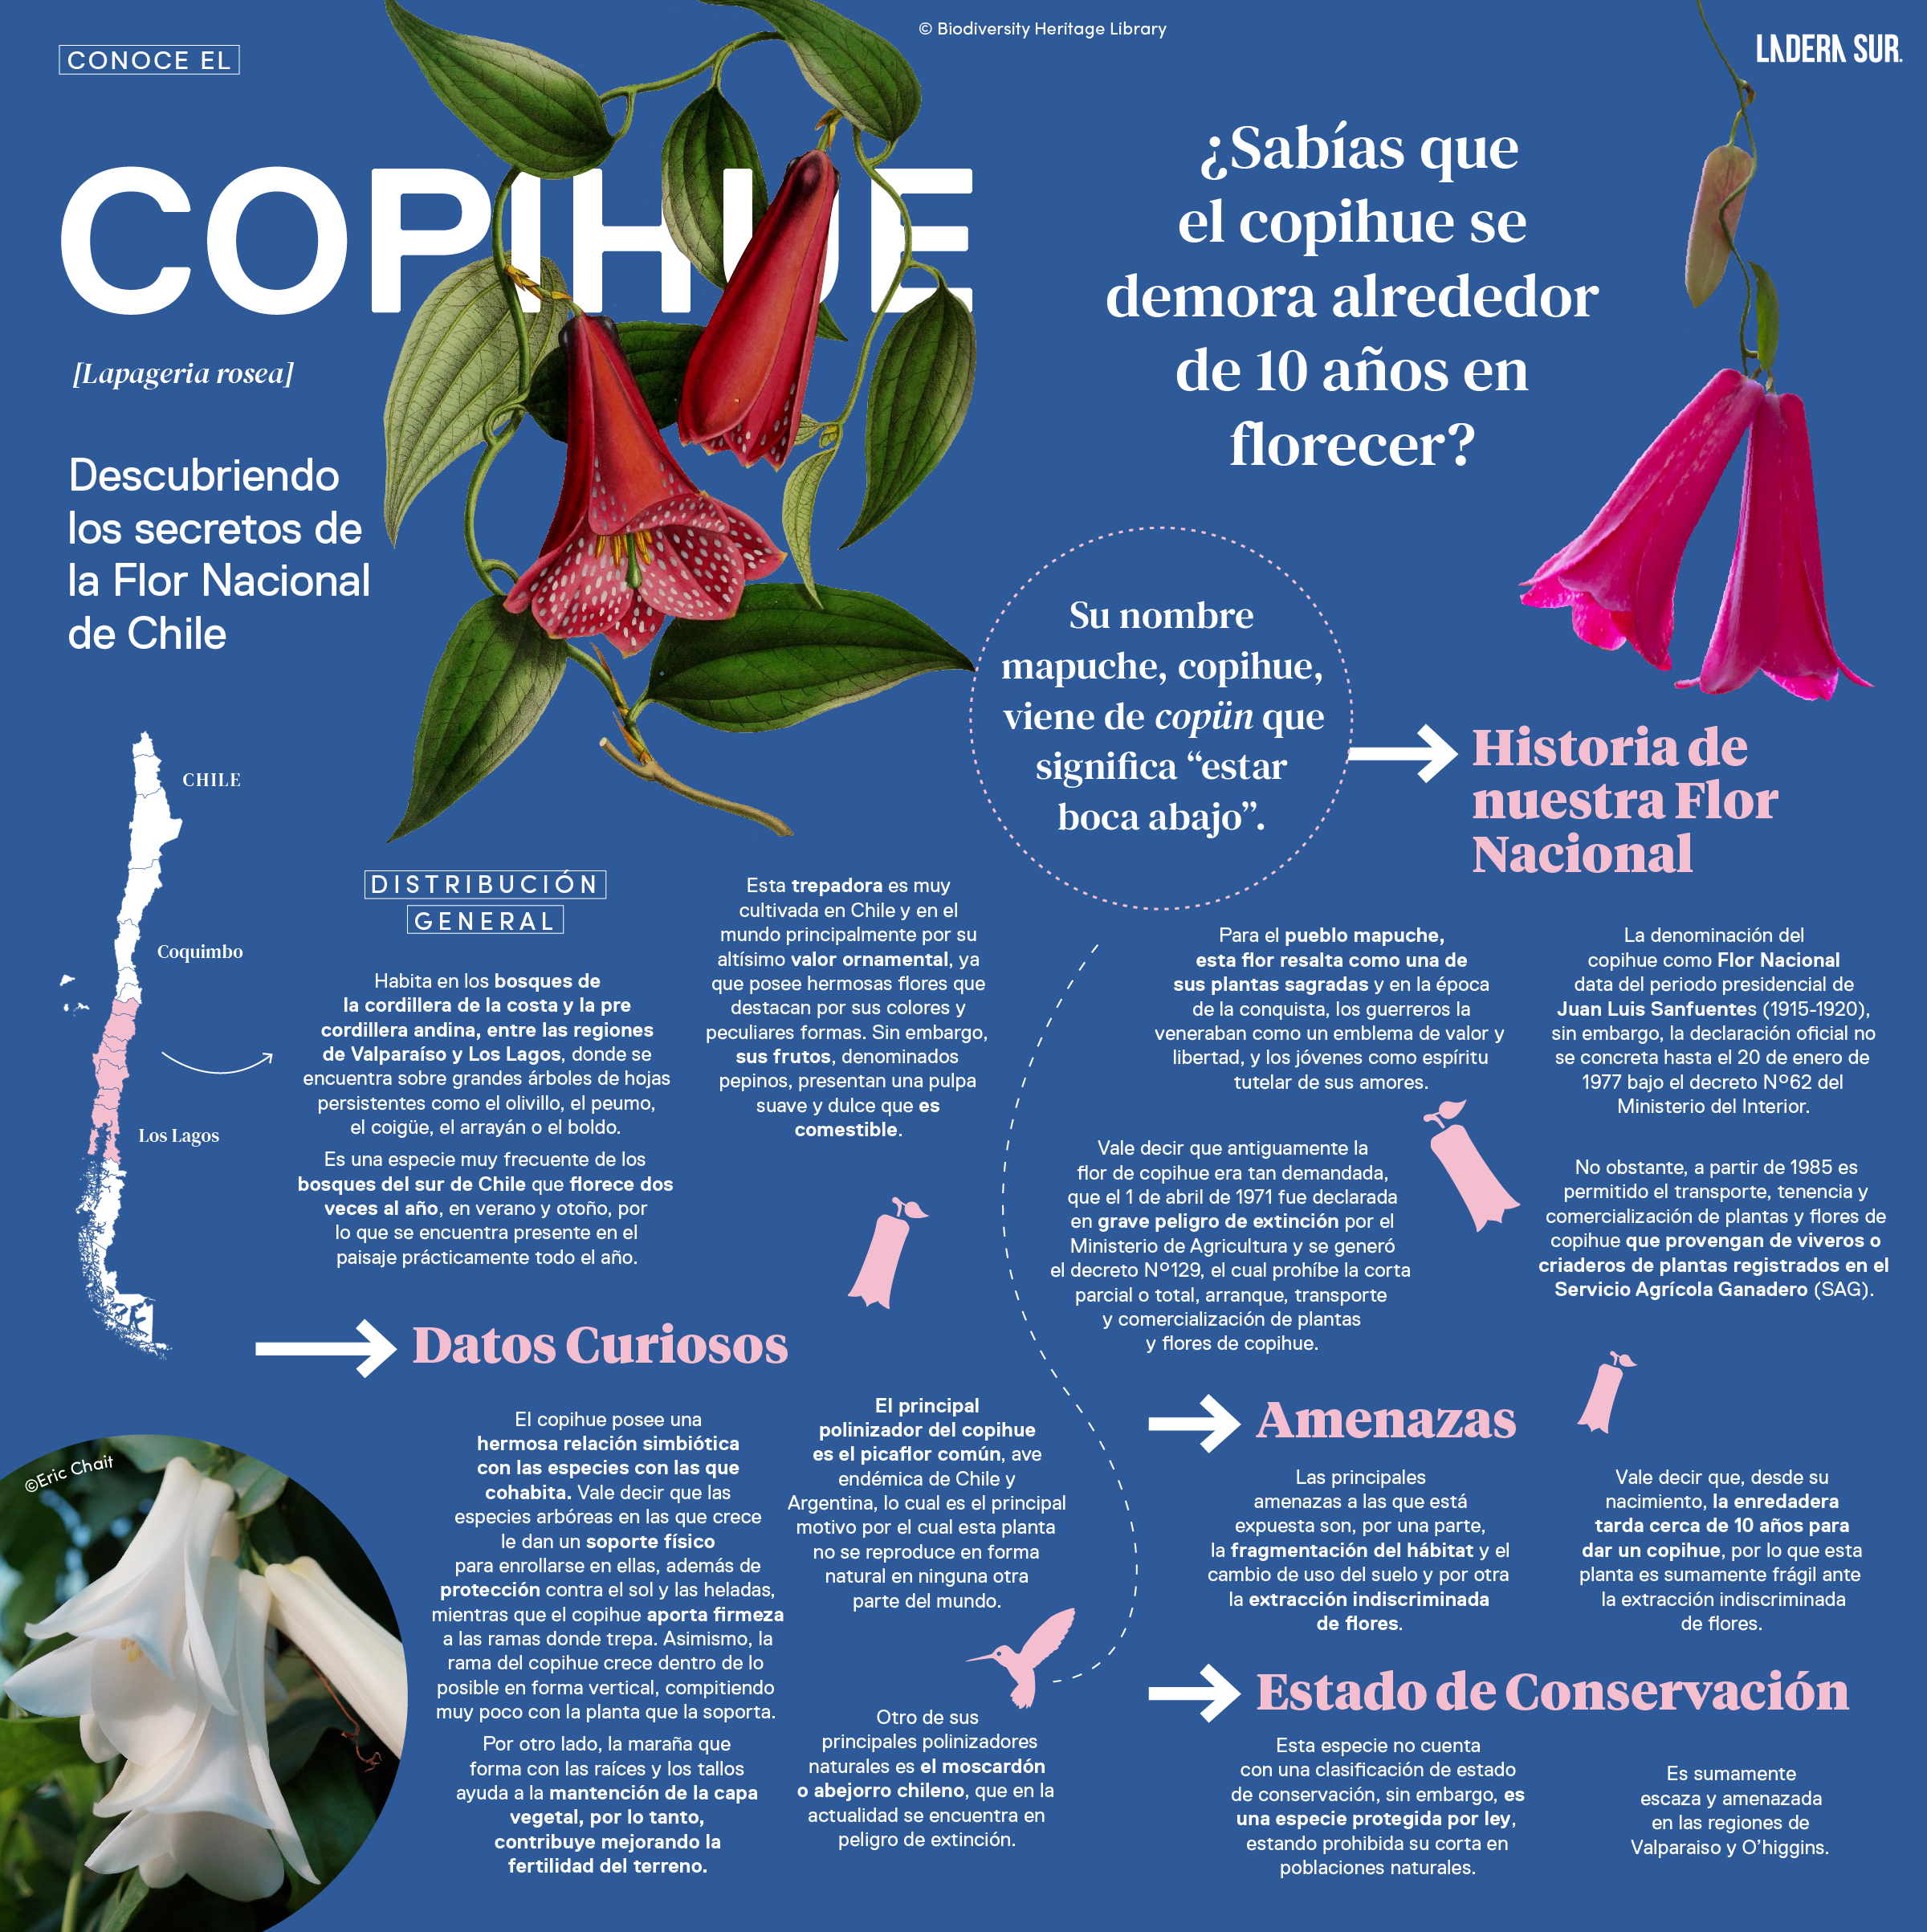 Copihue, descubriendo los secretos de la Flor Nacional de Chile